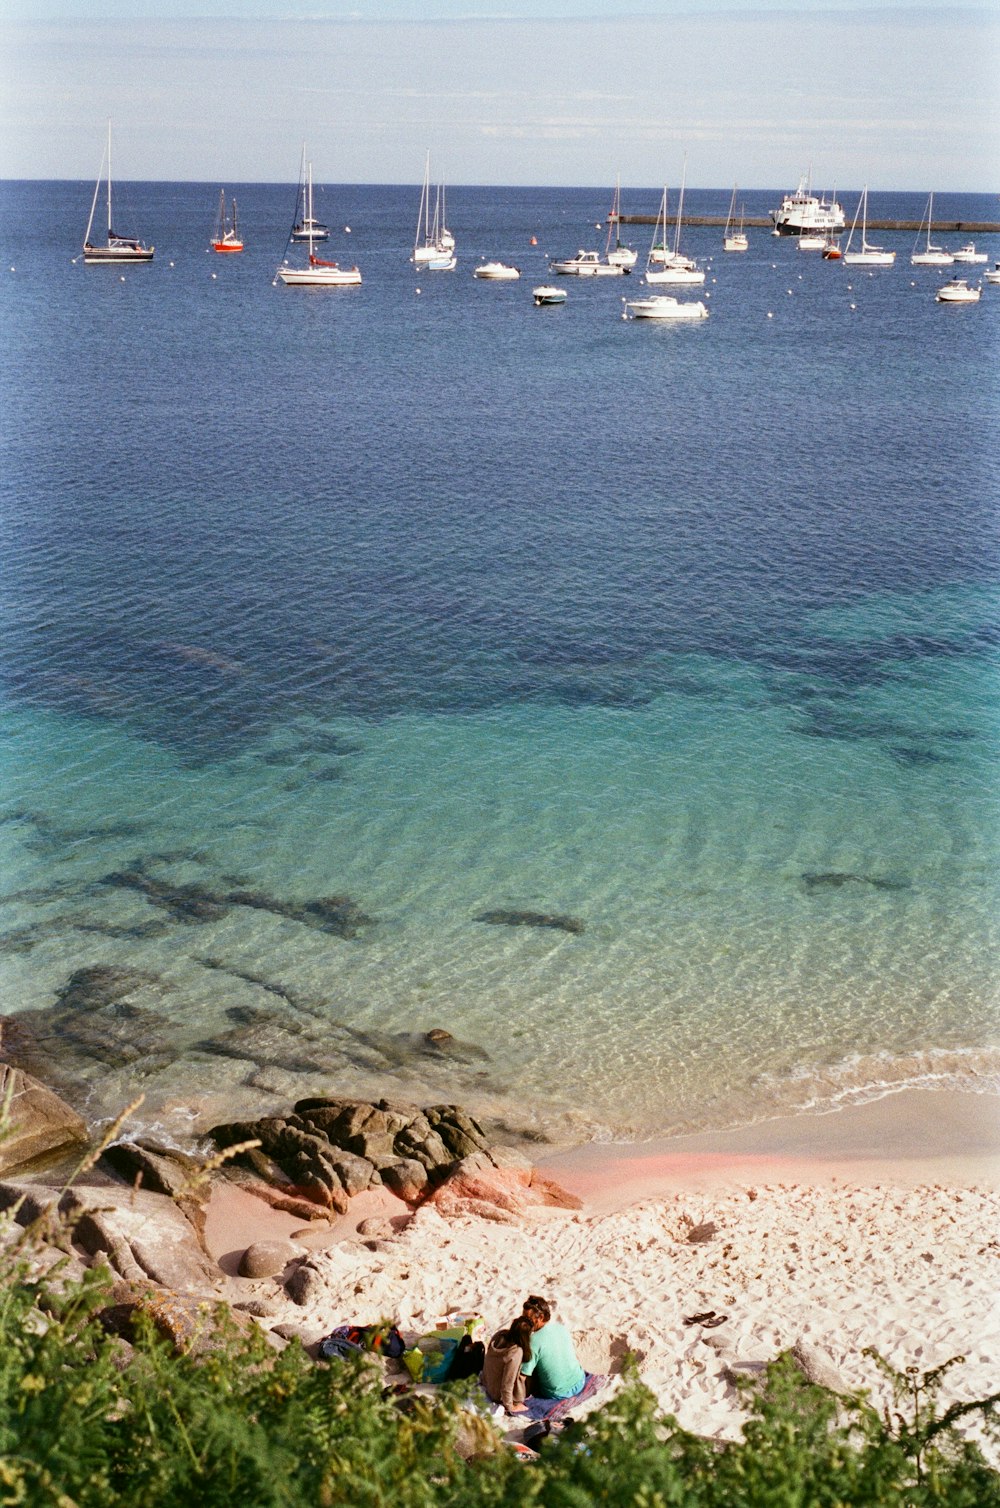 Un gruppo di persone sedute su una spiaggia rocciosa con barche in acqua